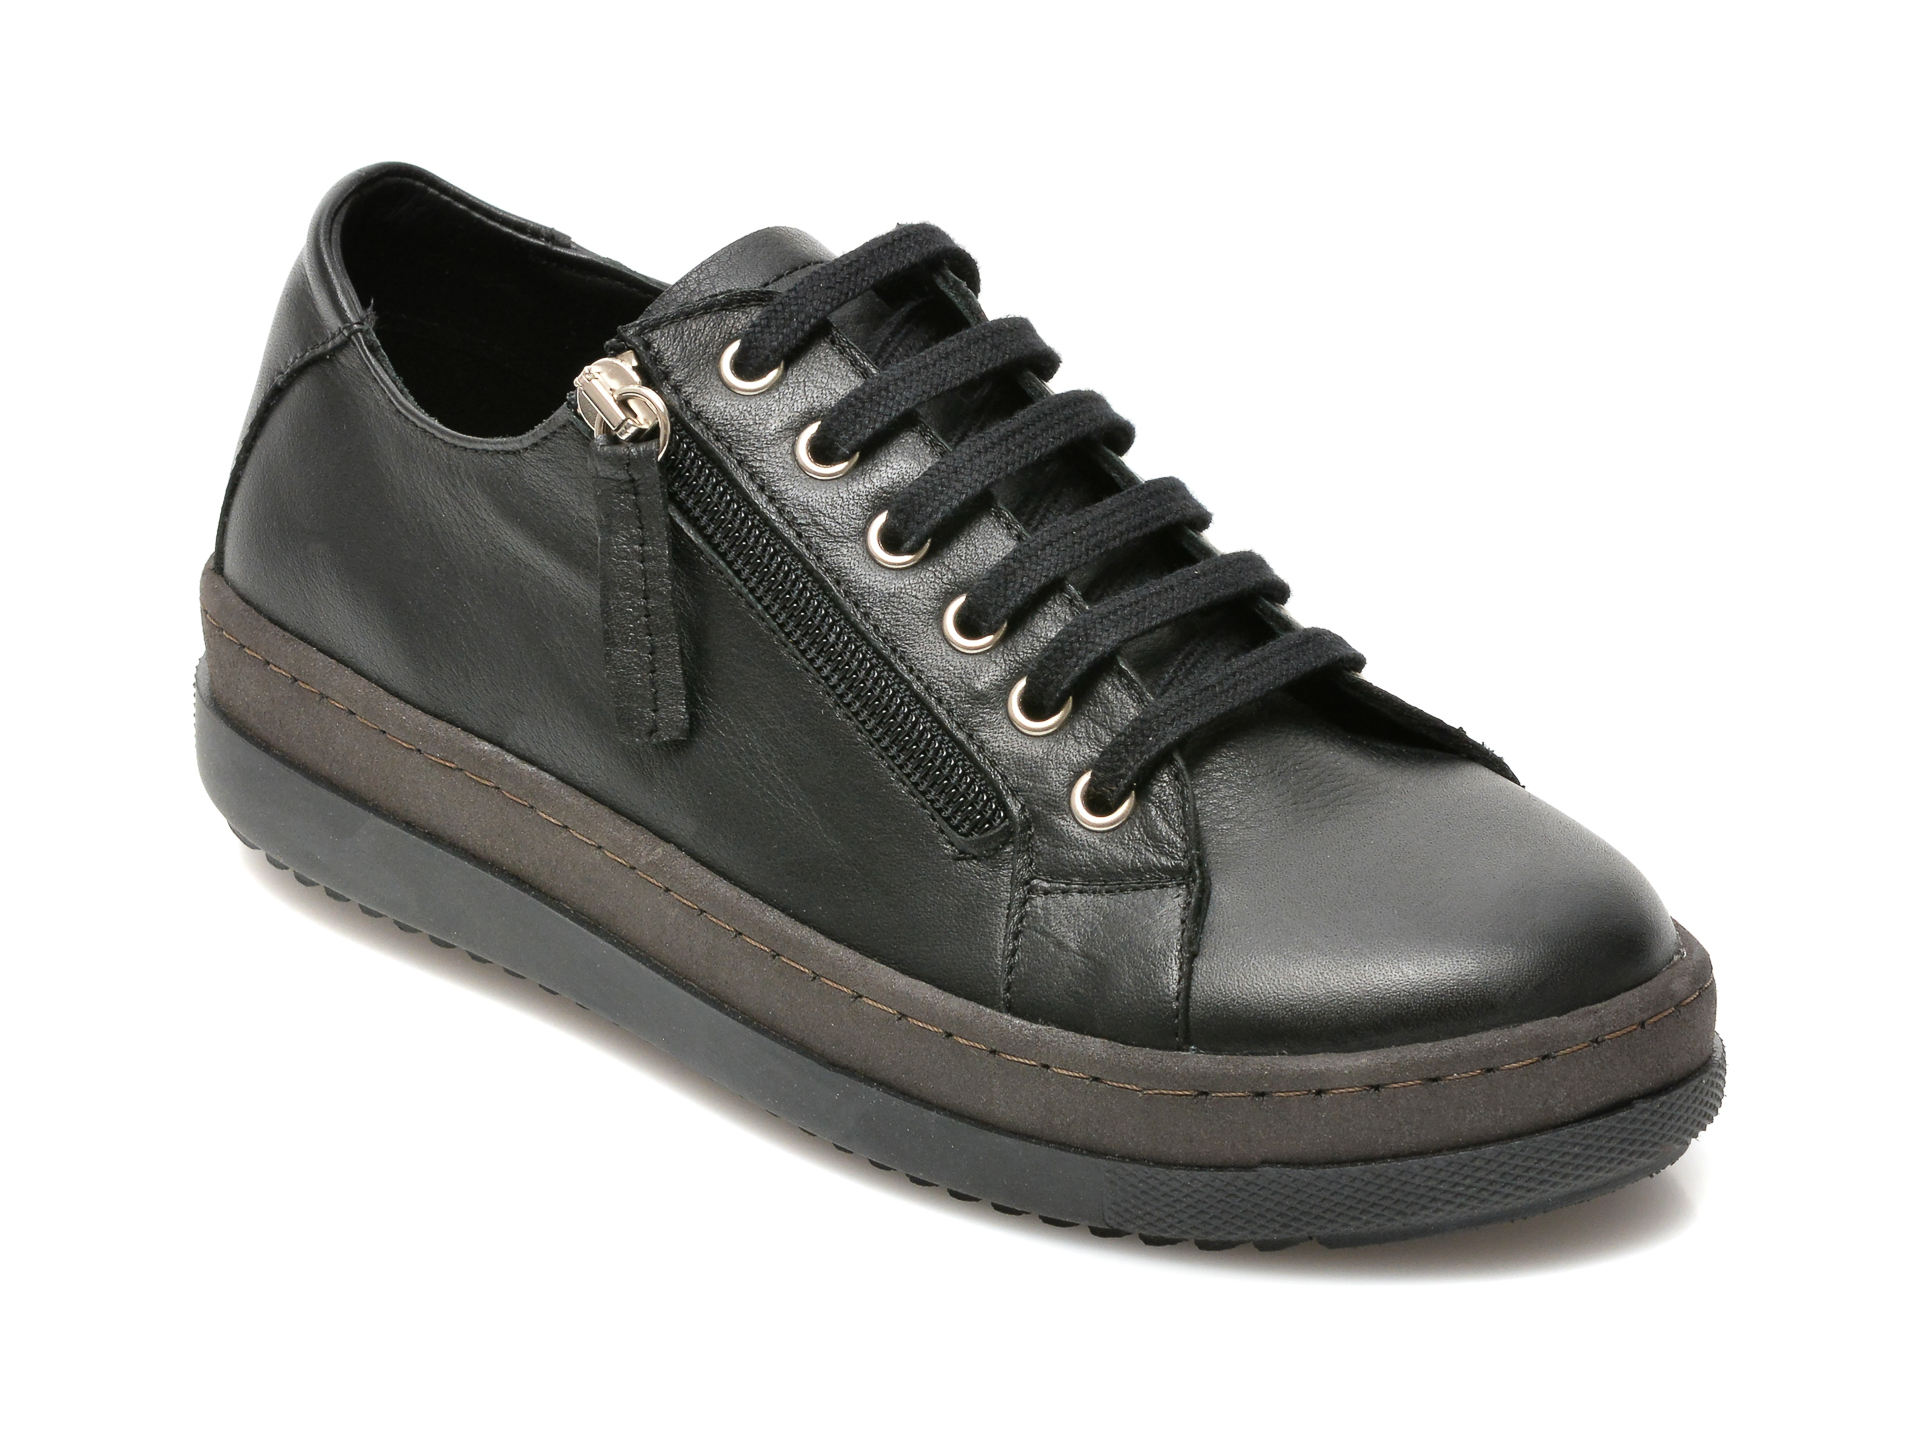 Pantofi FLAVIA PASSINI negri, 2905, din piele naturala Flavia Passini imagine noua